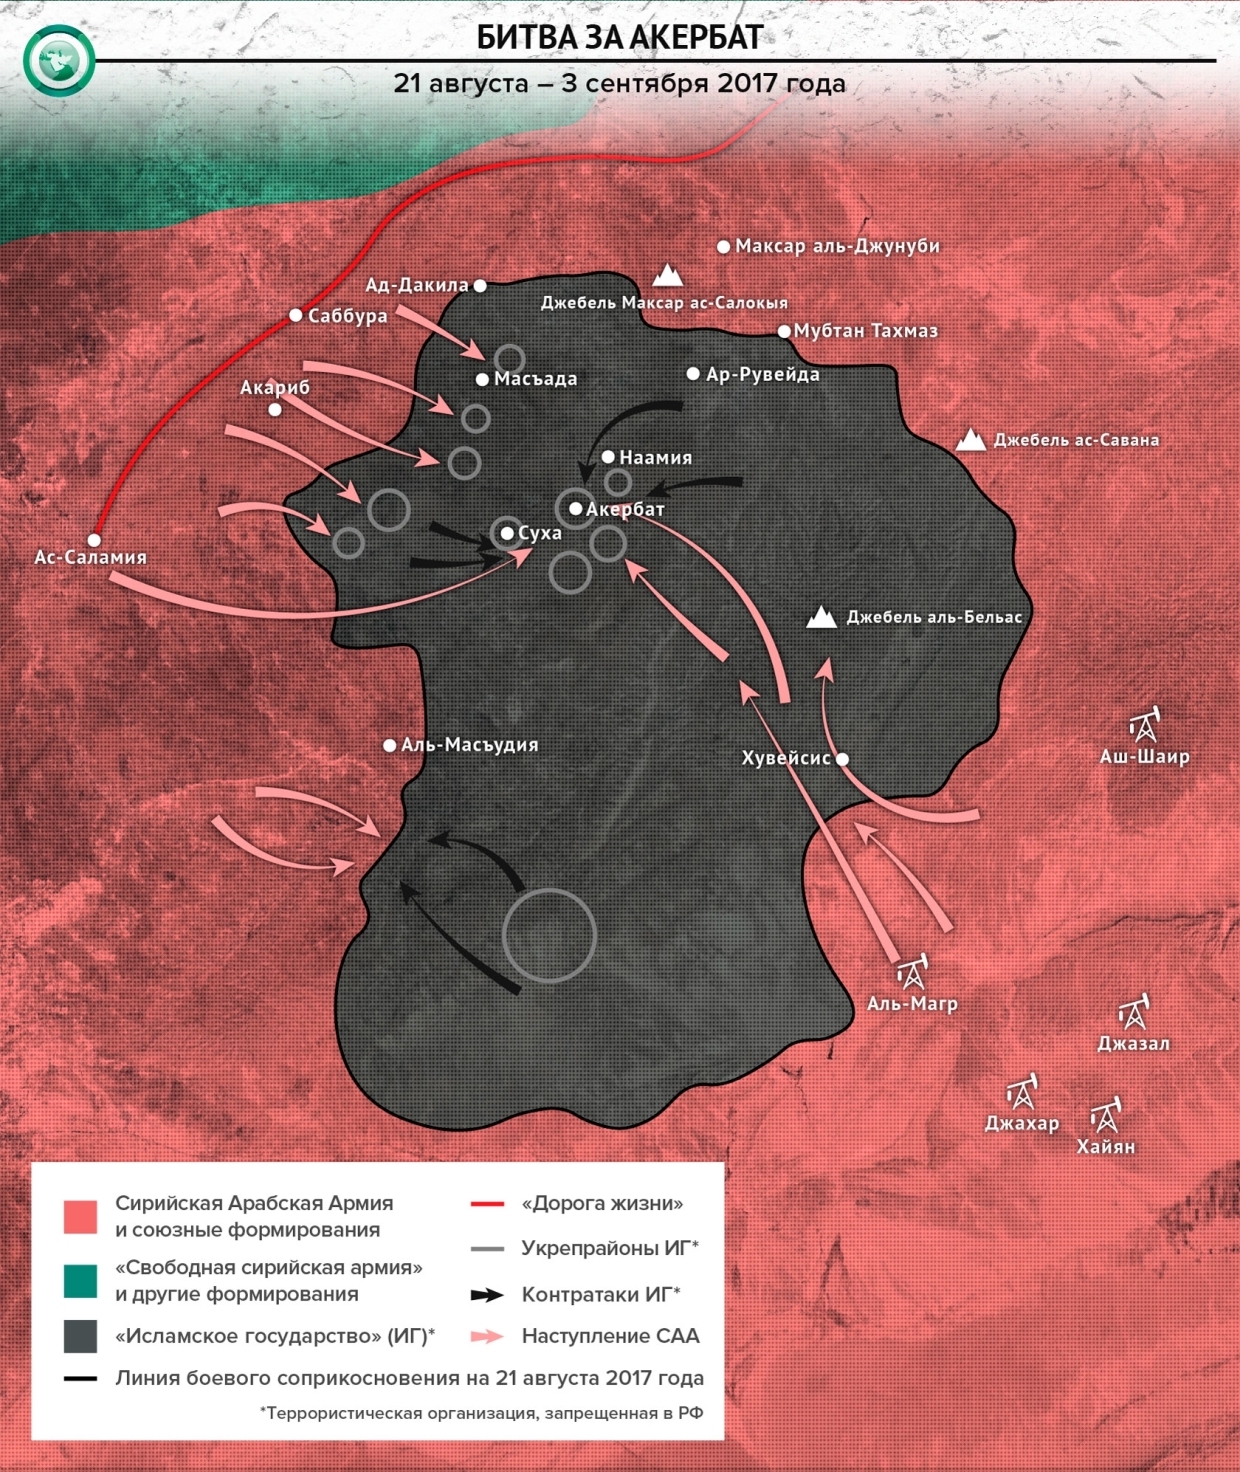 Битва за Дейр эз-Зор: как русские помогли армии Сирии закрепить успех в войне с ИГ